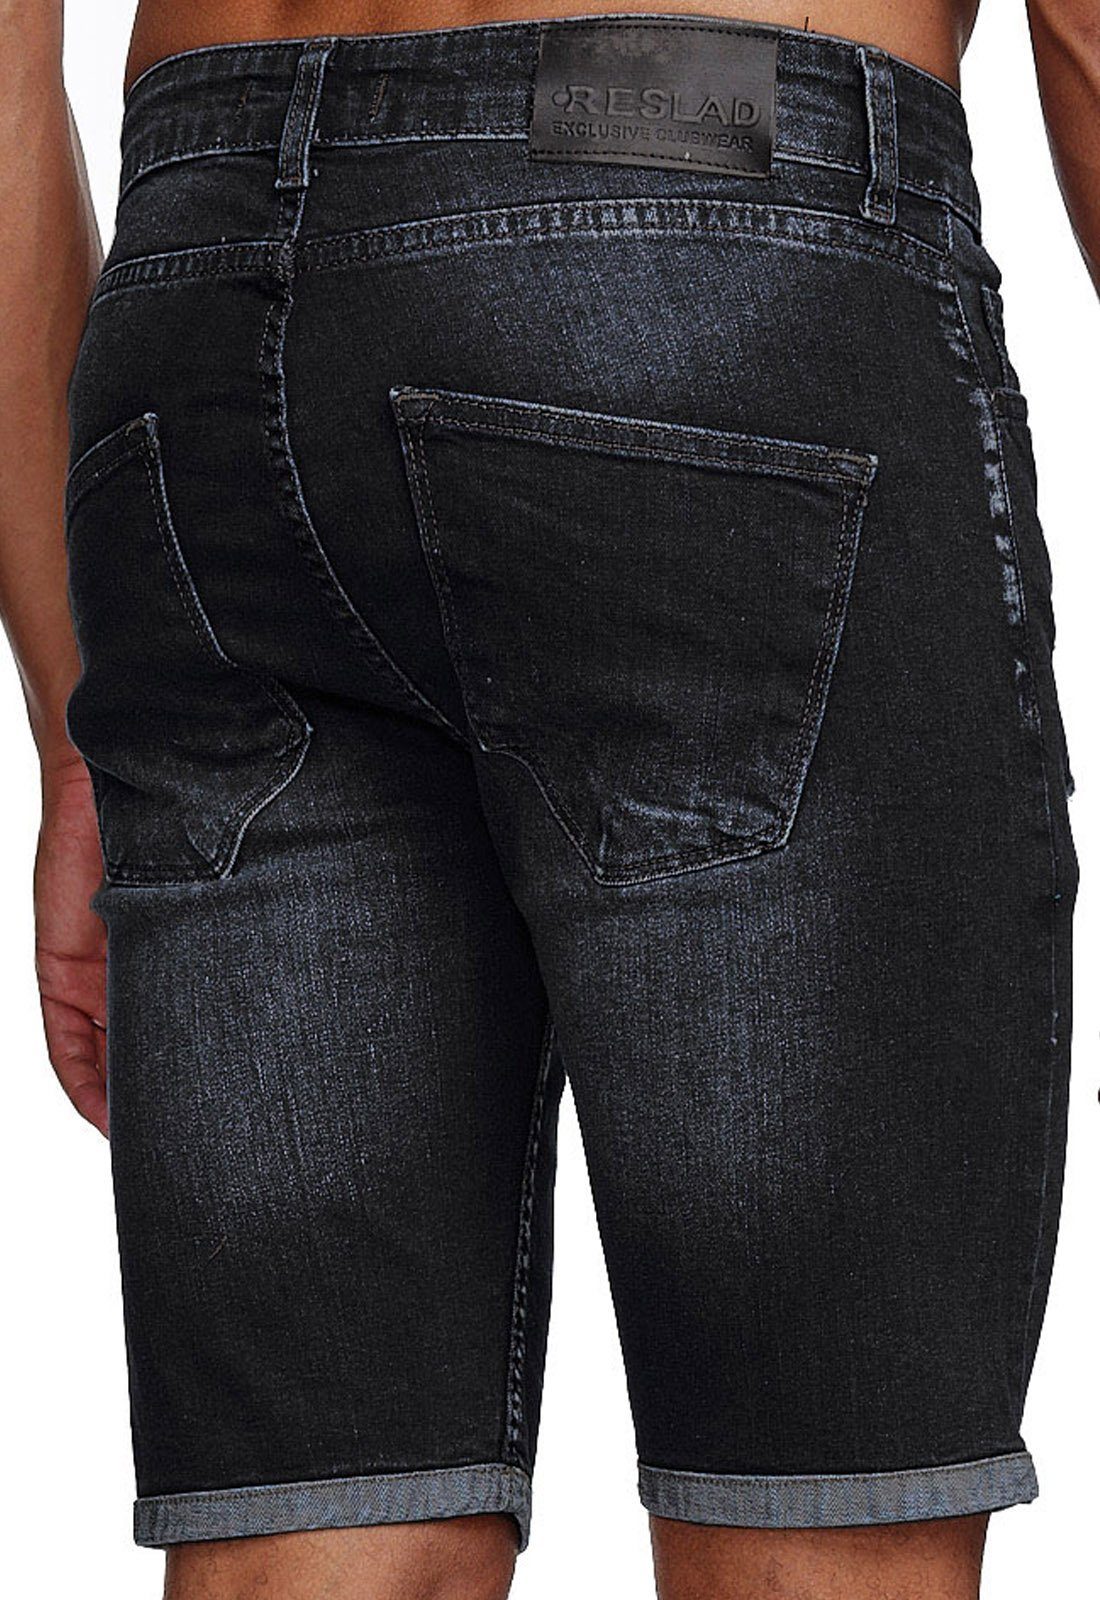 Jeans l Jeans-Hose Herren Shorts Hosen Sommer Stretch Used Destroyed Jeansshorts Kurze Destroyed Look Jeansbermudas Reslad schwarz Reslad